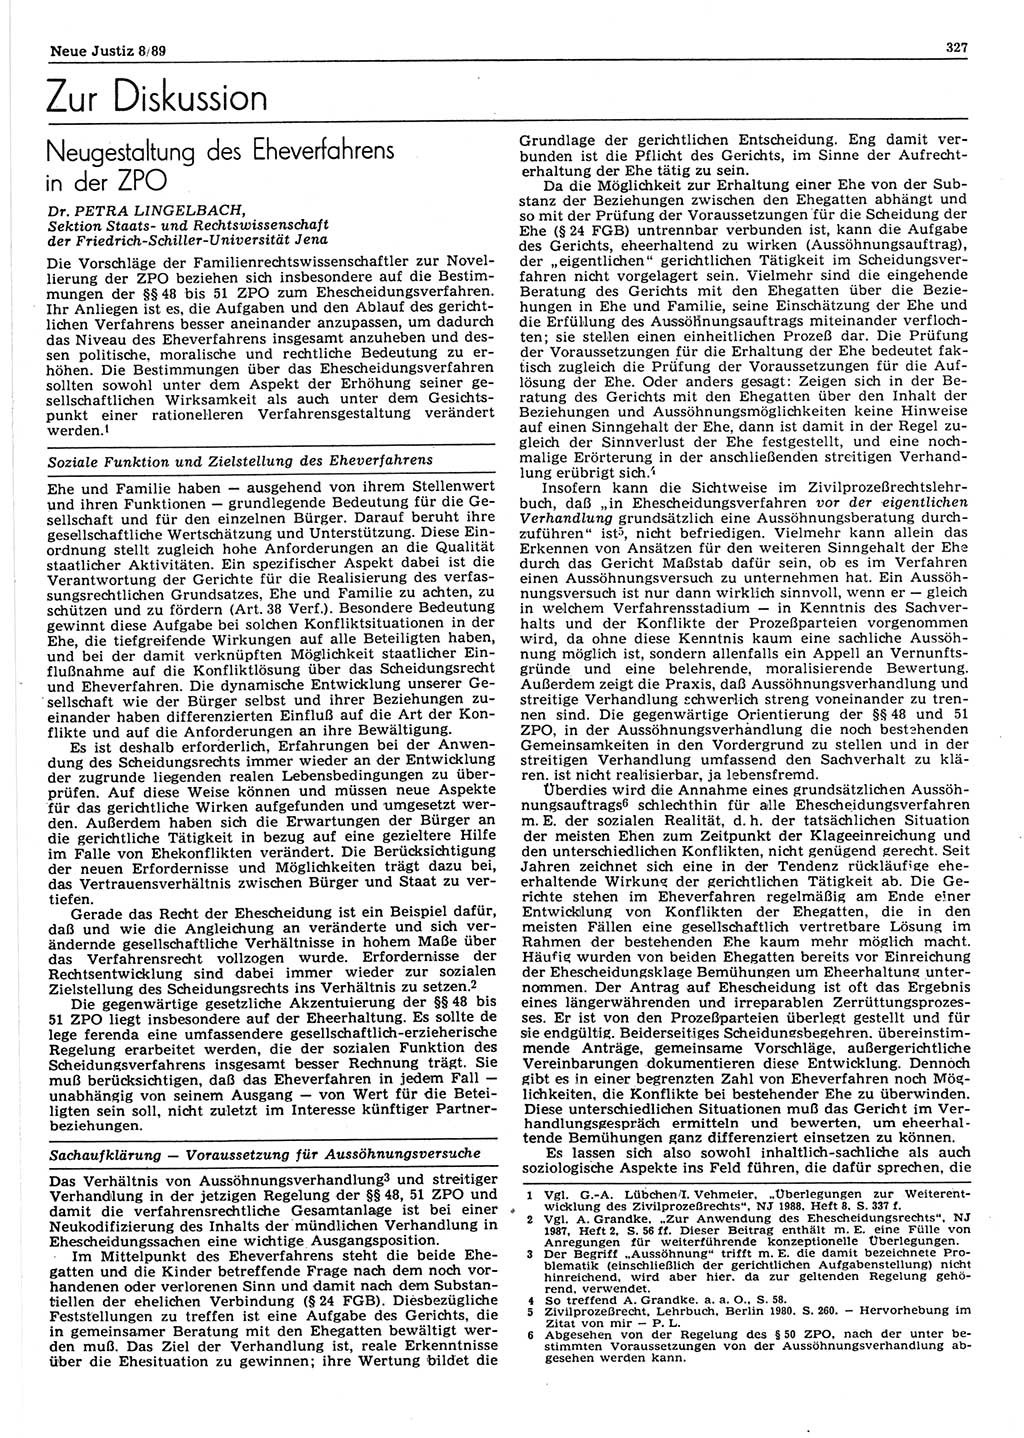 Neue Justiz (NJ), Zeitschrift für sozialistisches Recht und Gesetzlichkeit [Deutsche Demokratische Republik (DDR)], 43. Jahrgang 1989, Seite 327 (NJ DDR 1989, S. 327)